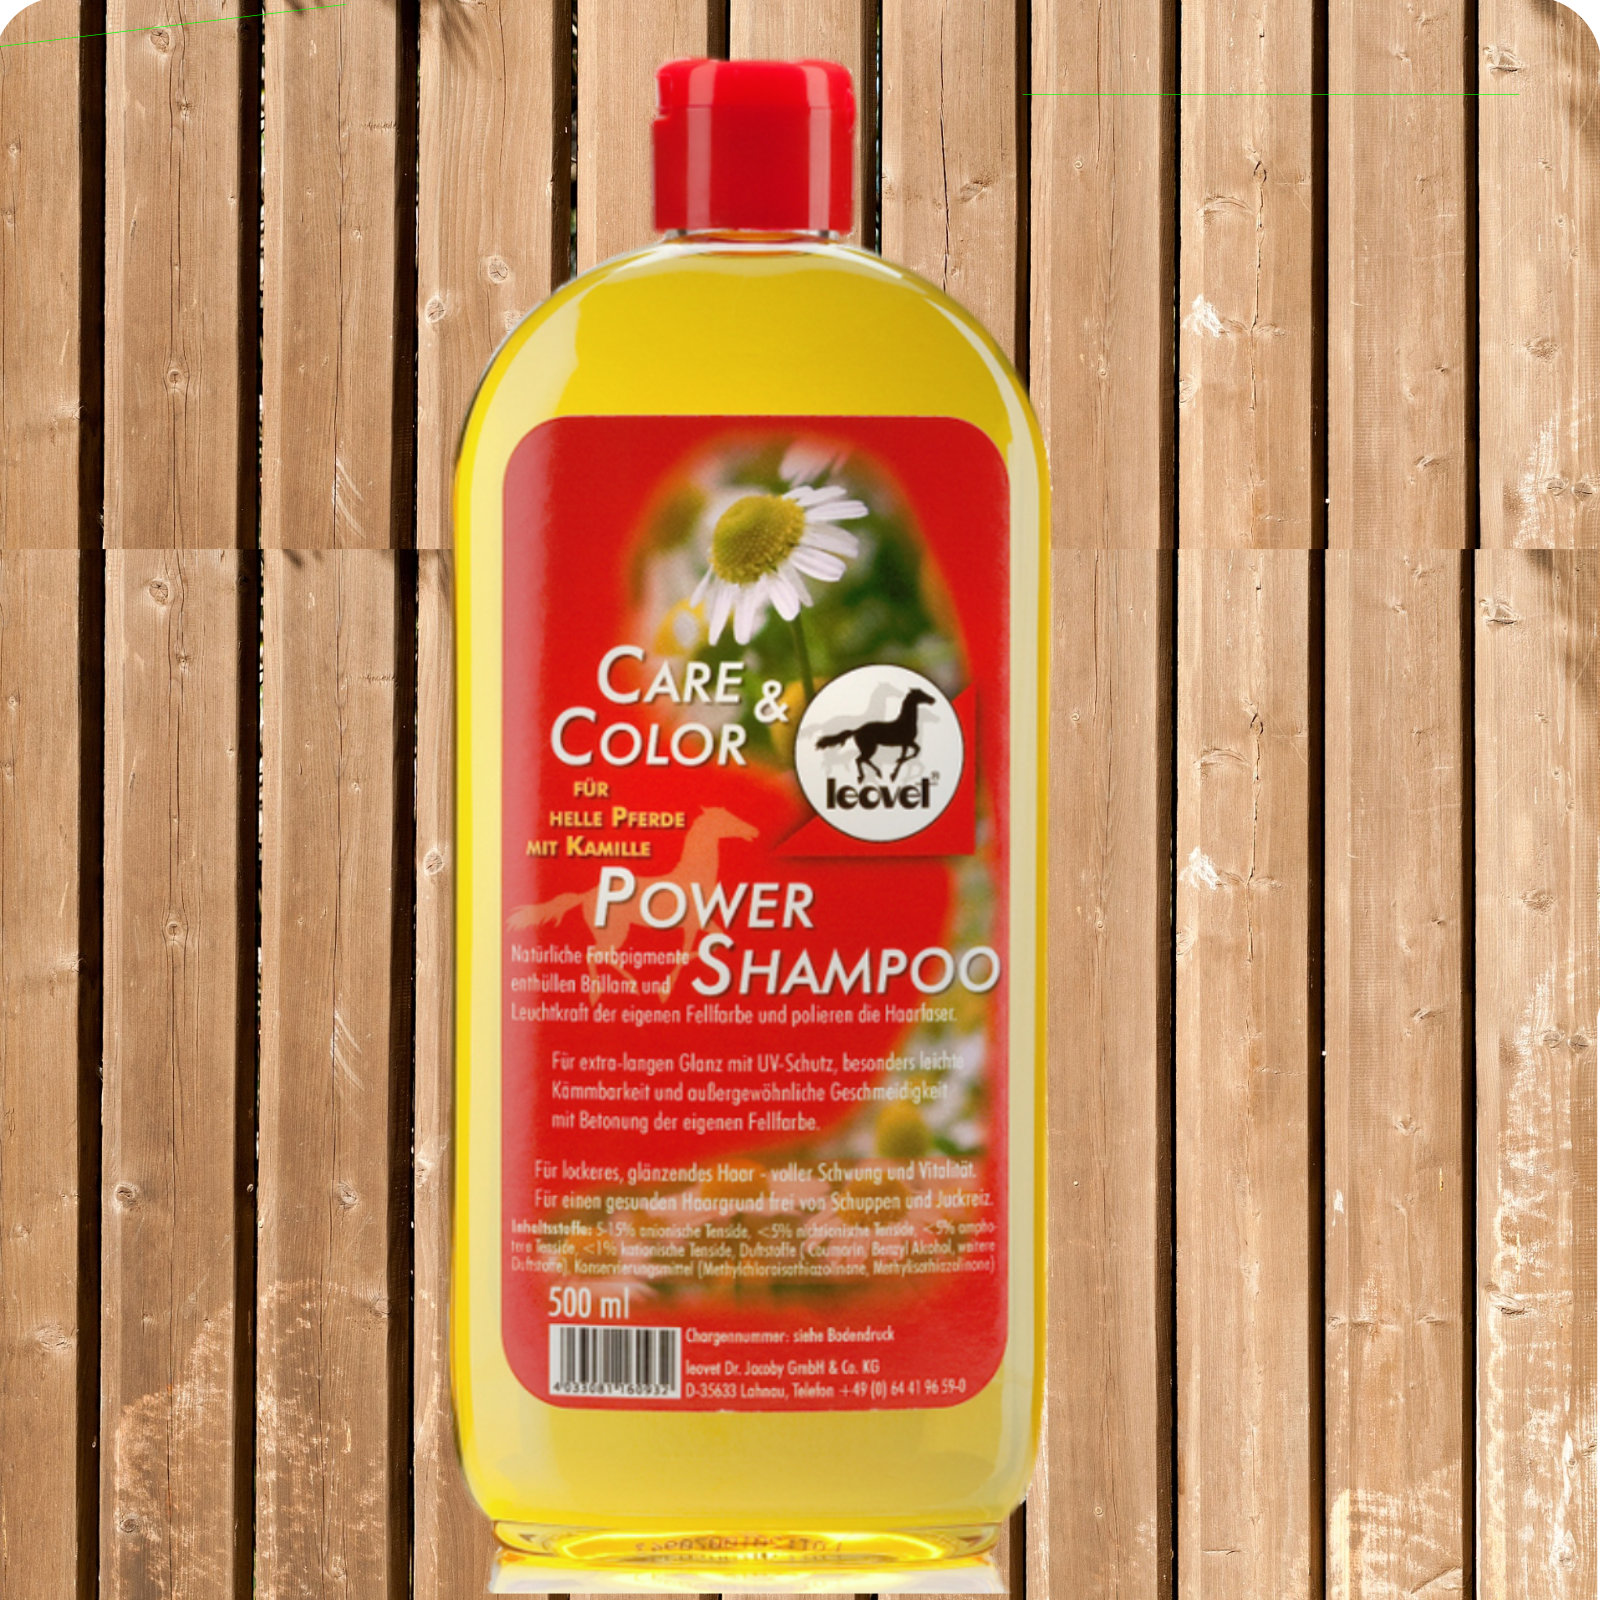 LEOVET Power Shampoo für helle Pferde 500ml, Pferdeshampoo mit K